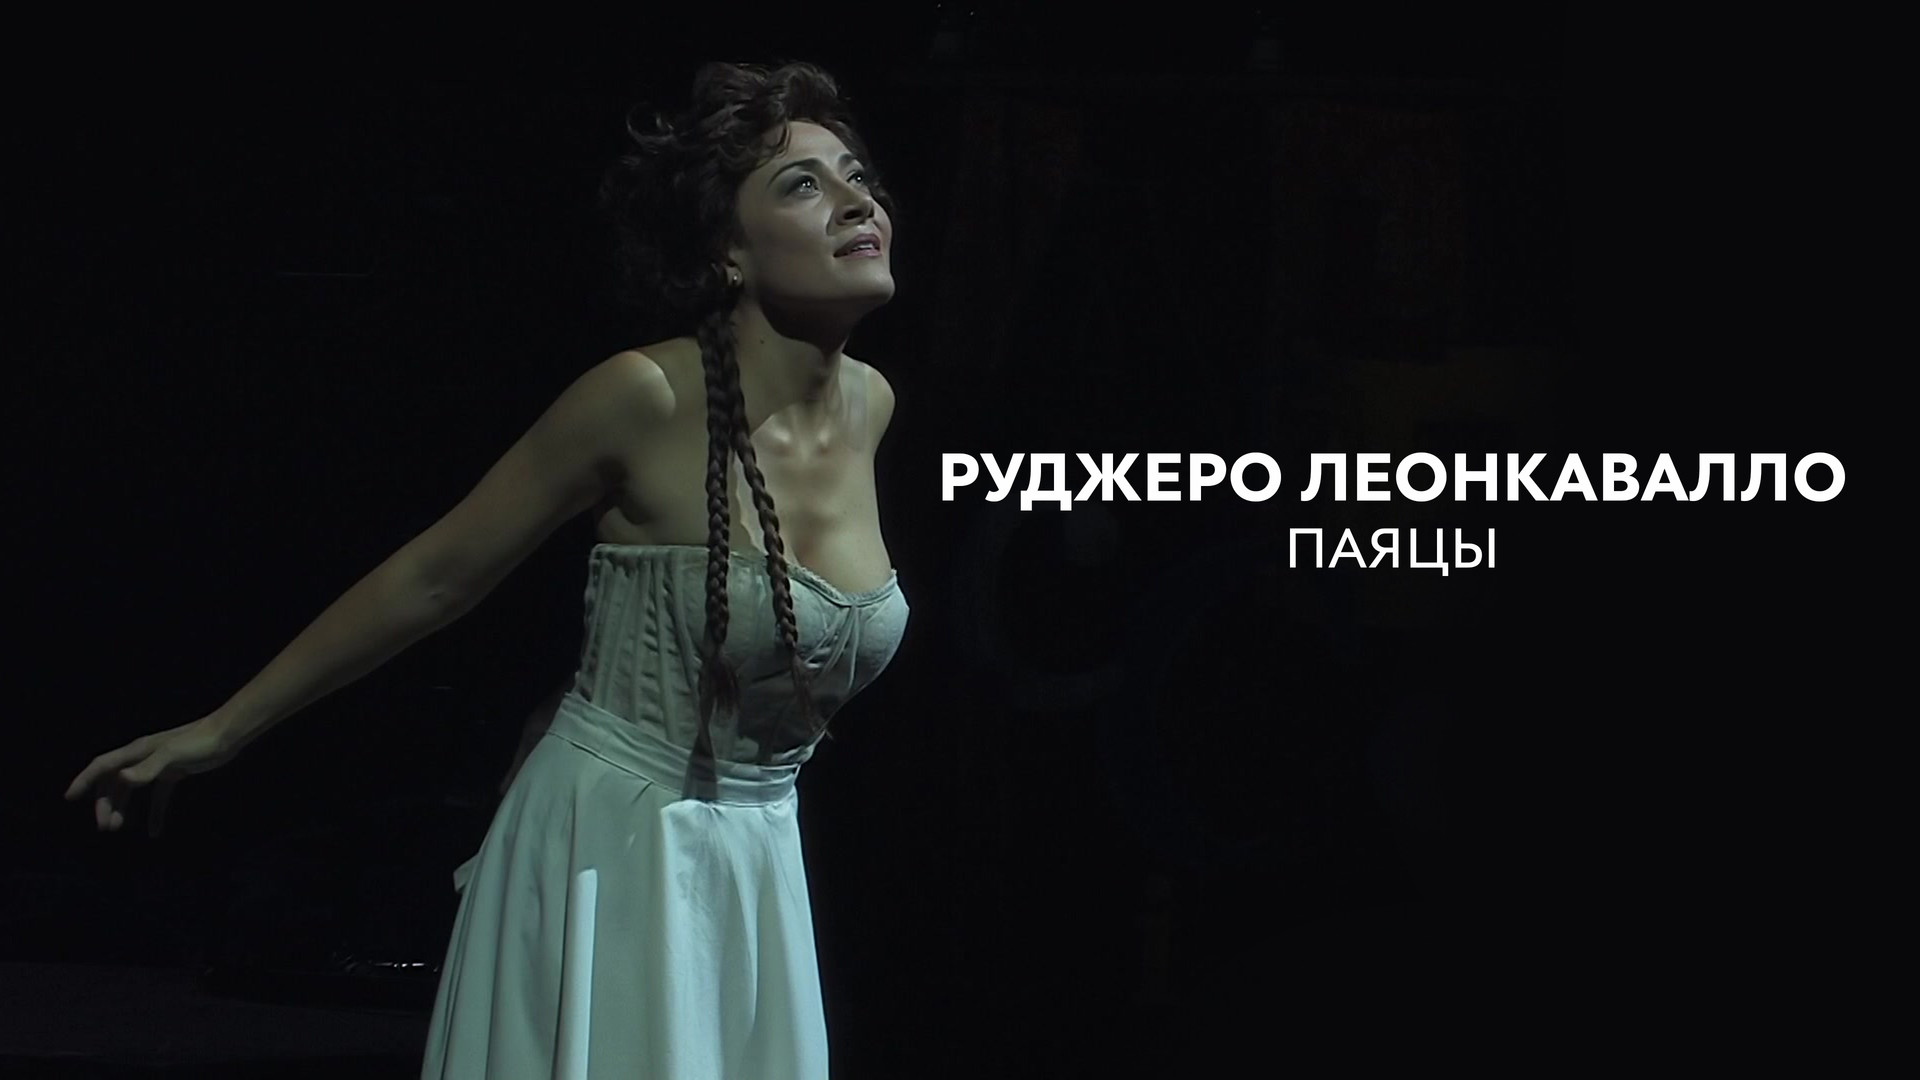 сердце красавицы склонно к измене слушать на русском опера фото 29